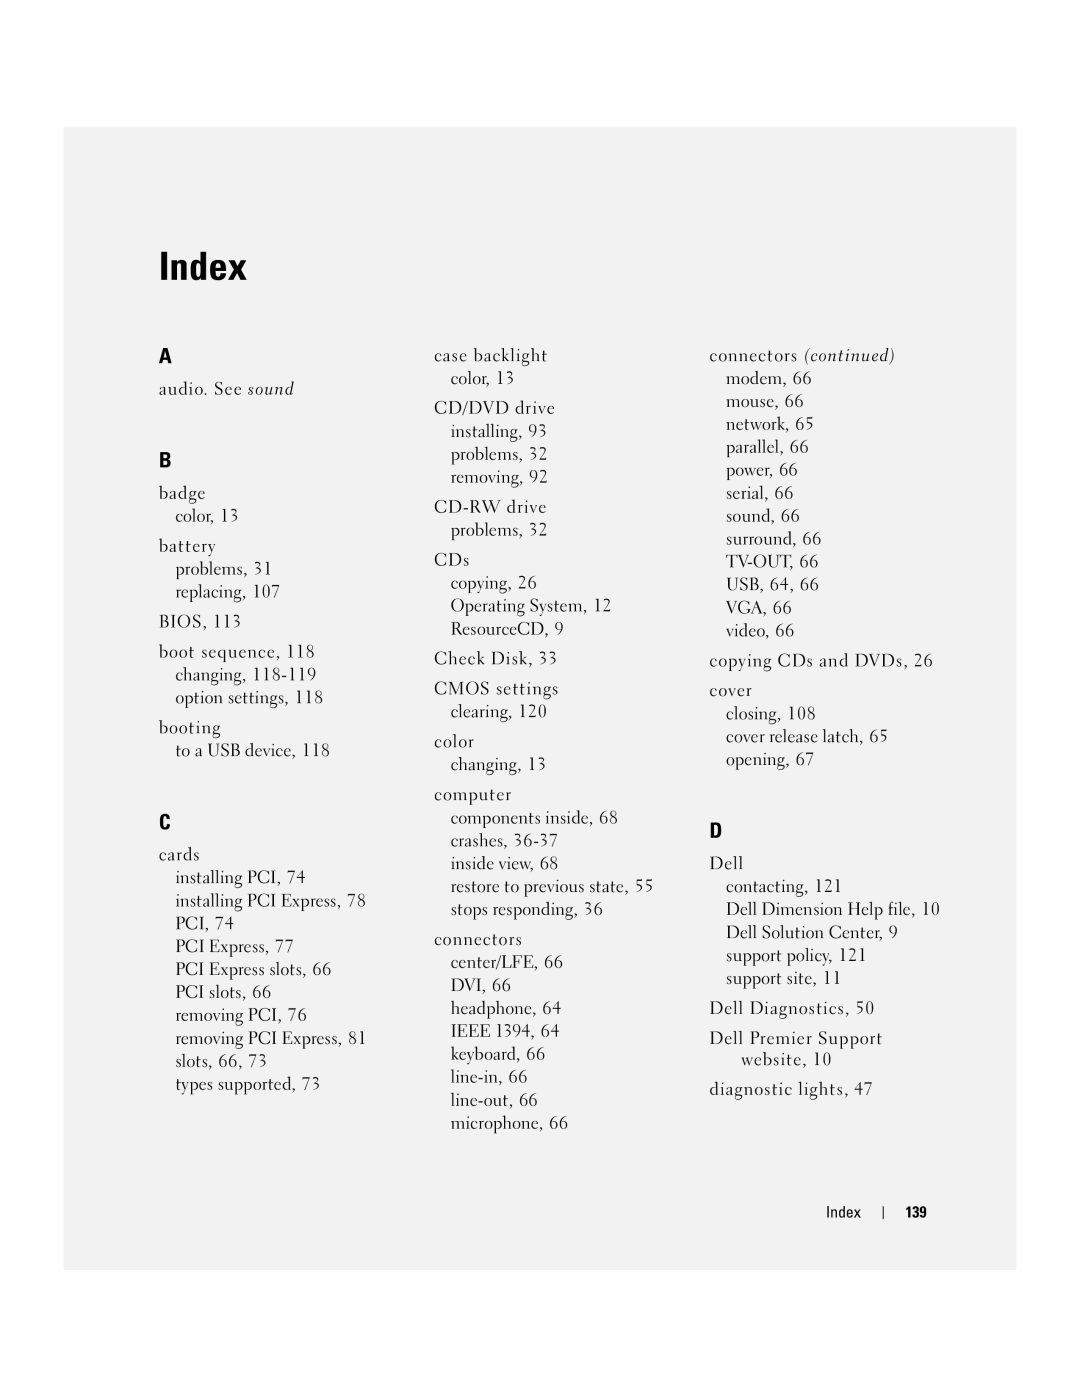 Dell XPS GEN 3 manual Index 139 